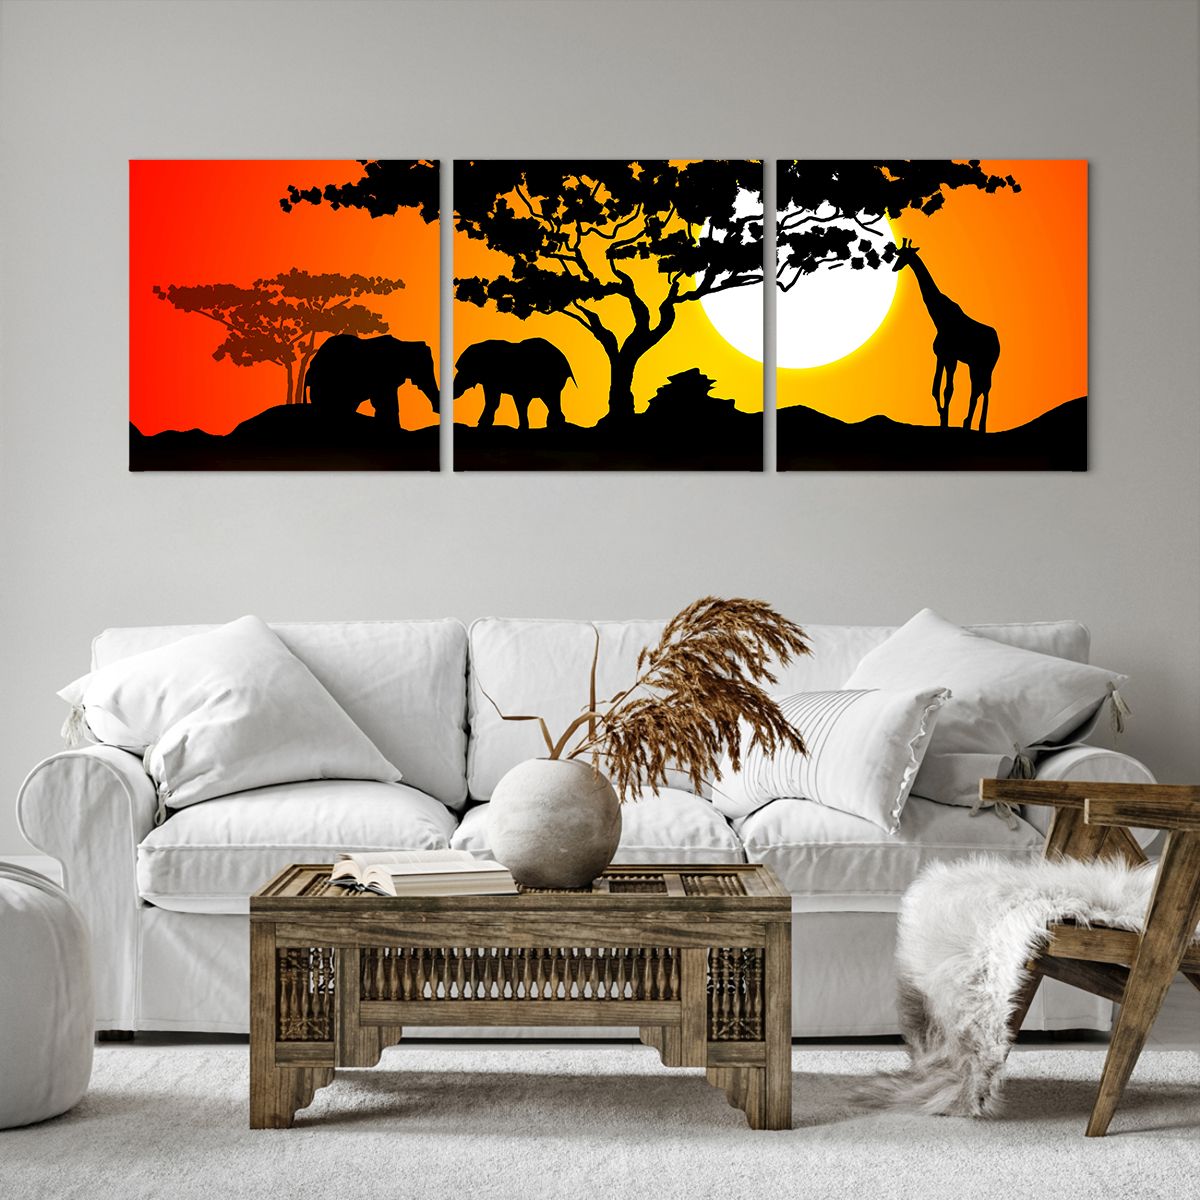 Impression sur toile Animaux, Impression sur toile Afrique, Impression sur toile Girafe, Impression sur toile  Éléphant, Impression sur toile Savane